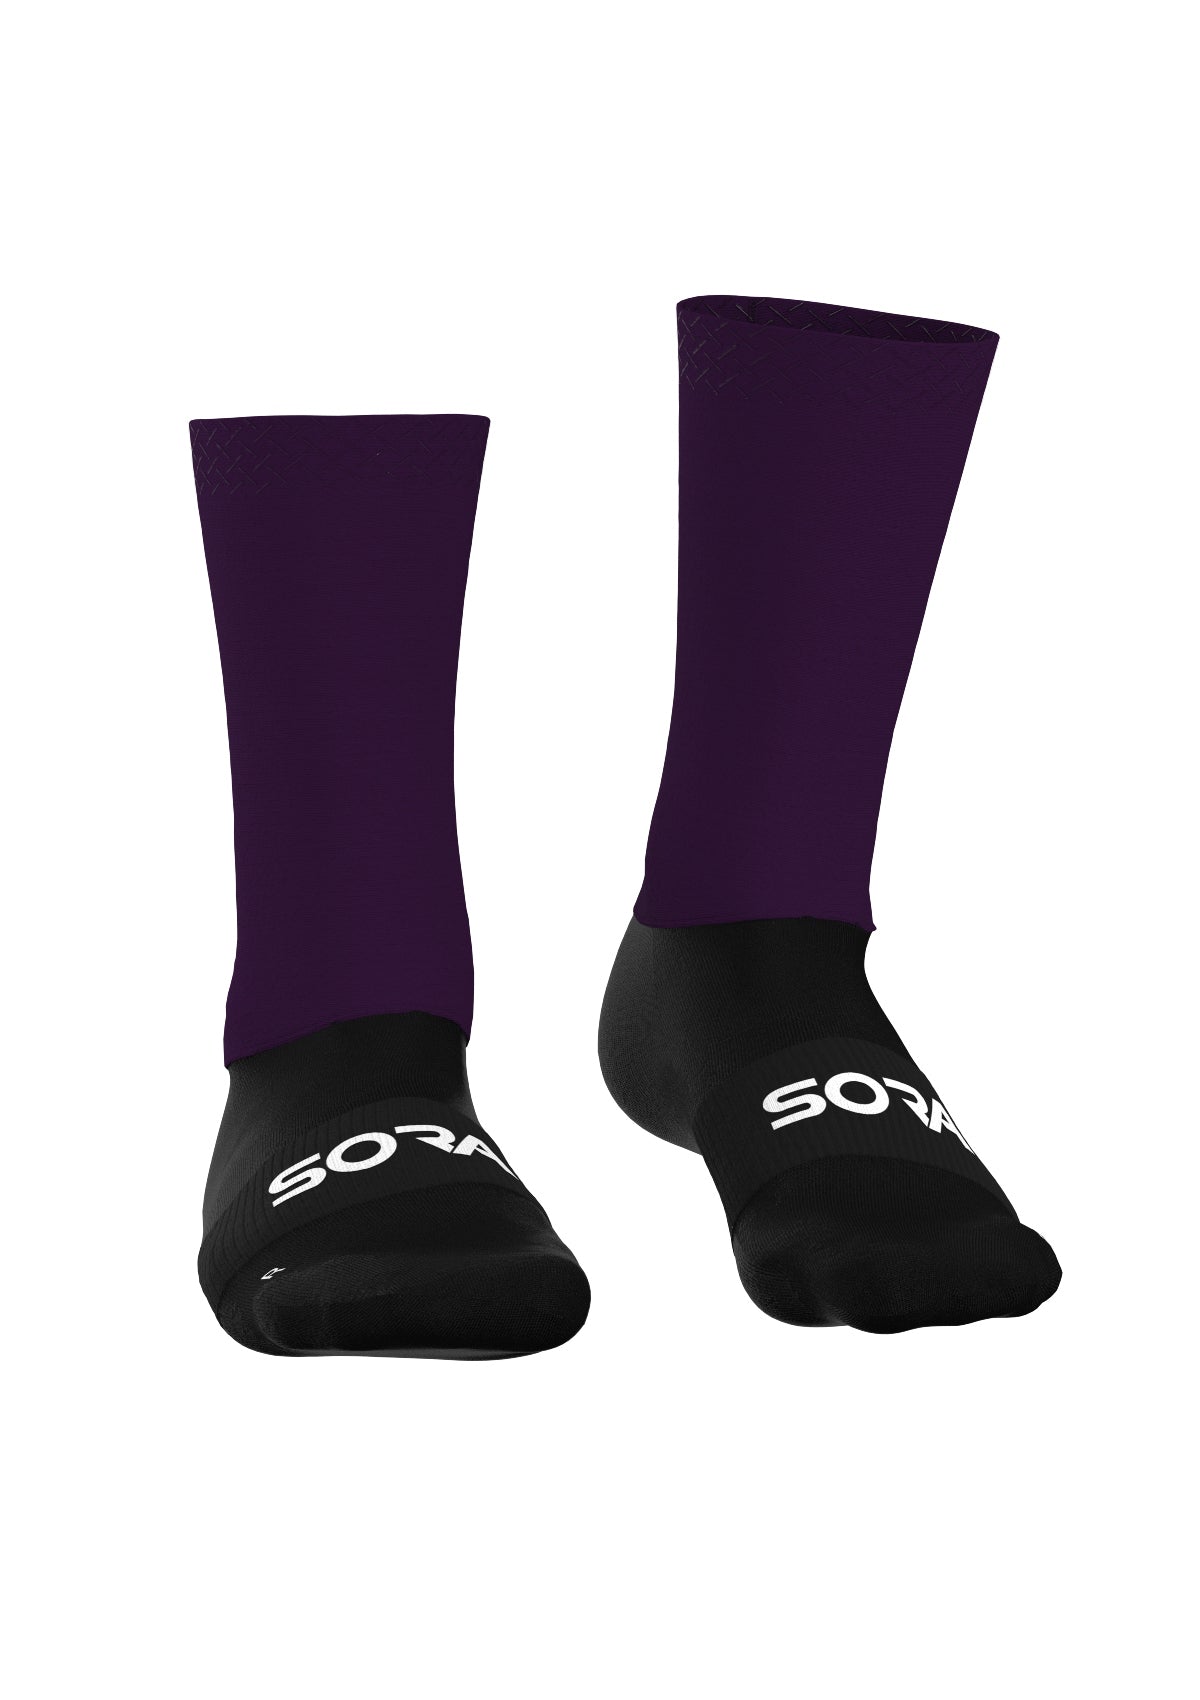 Aero Pro Light Violett Fahrrad Socken